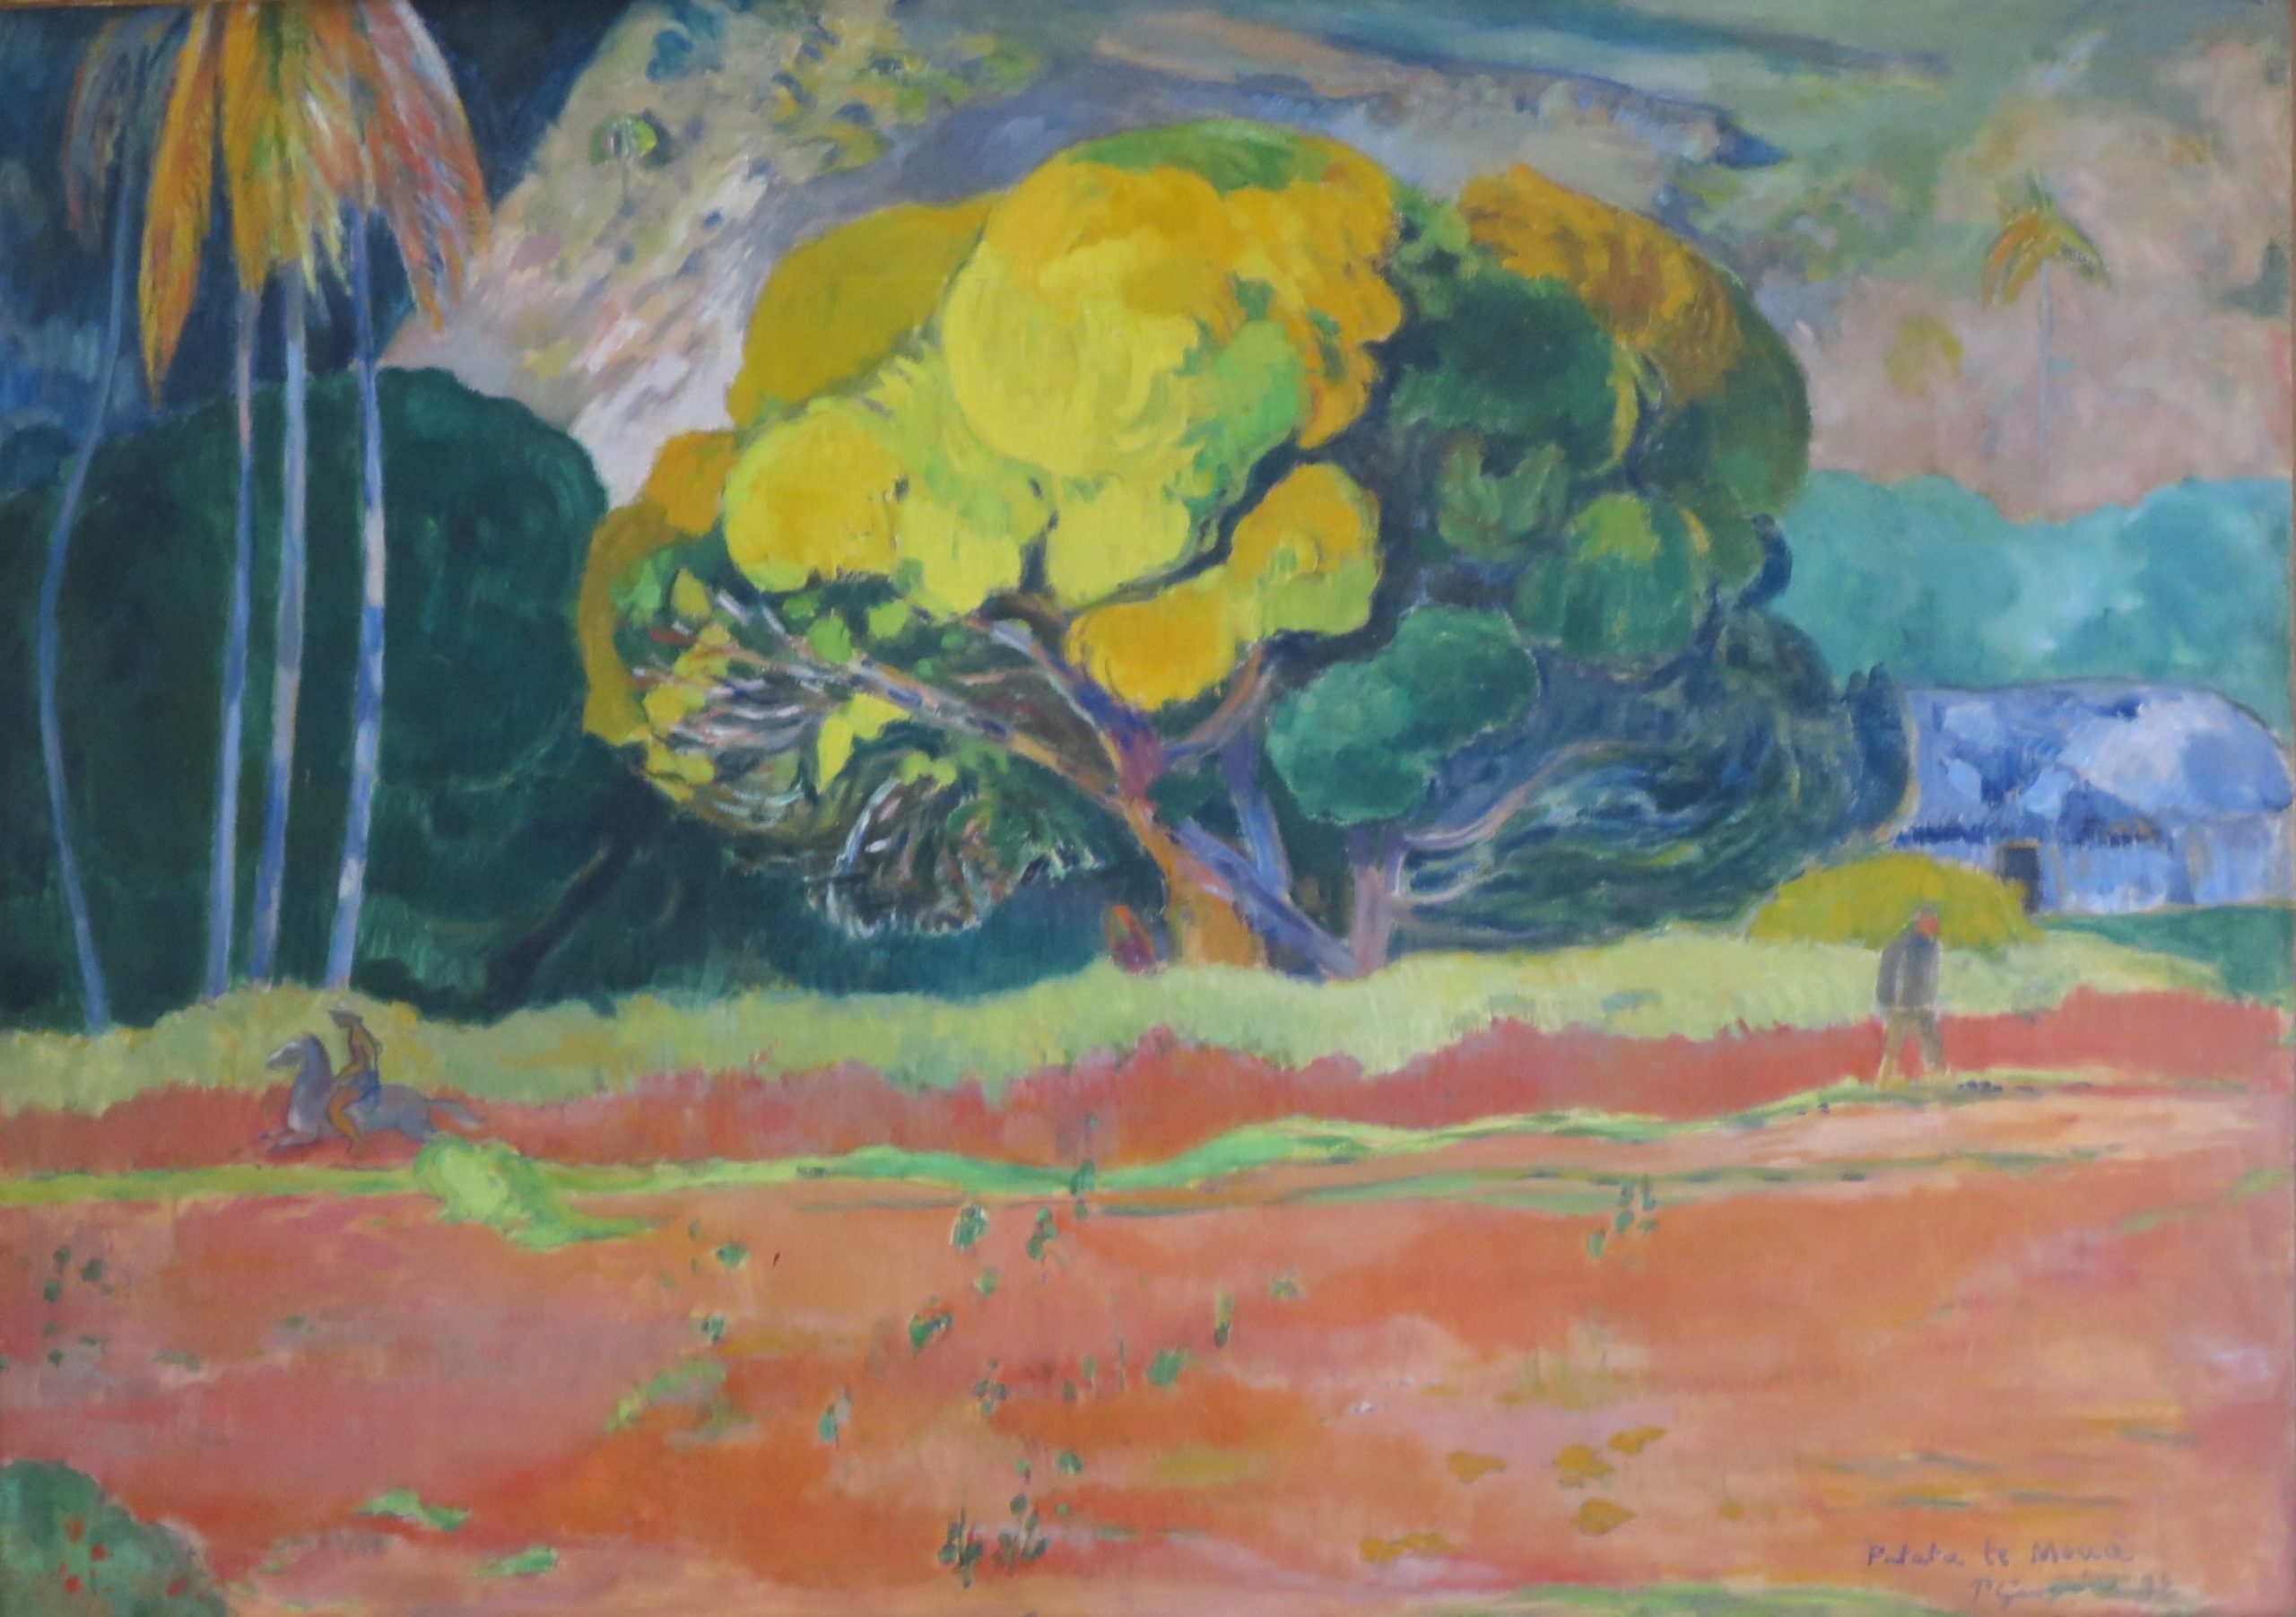 How good was Gauguin?